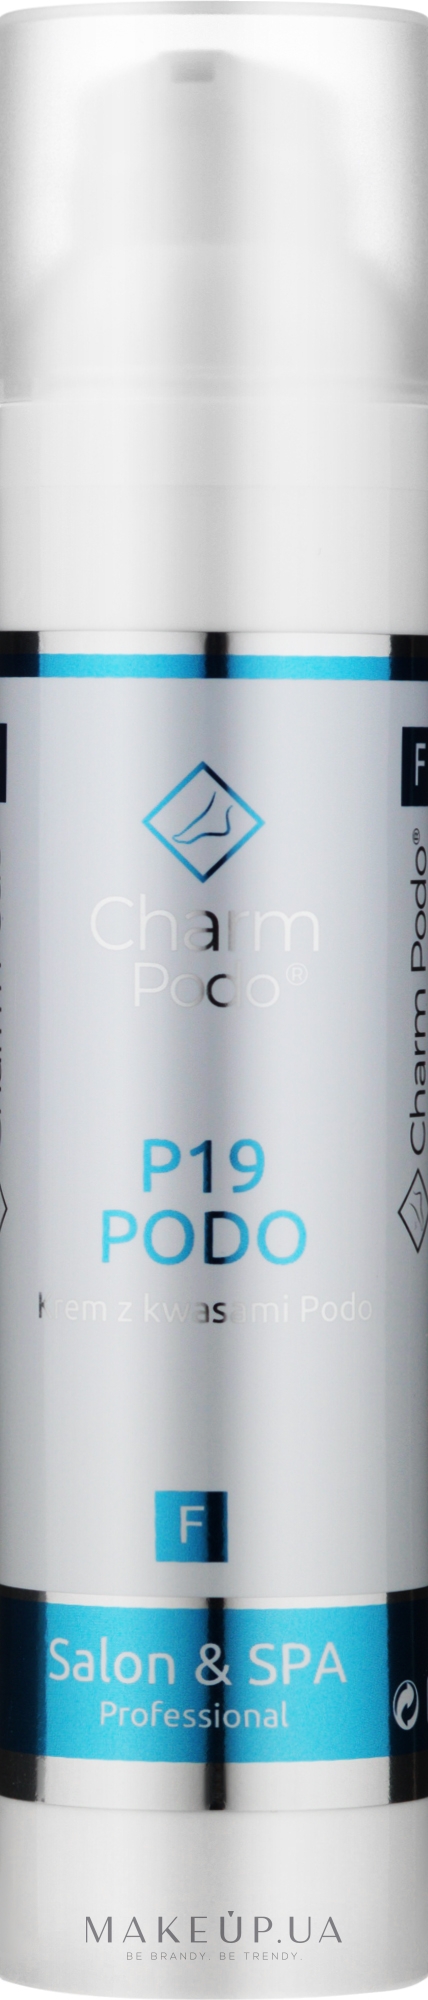 Крем для ніг з кислотами - Charmine Rose Charm Podo P19 — фото 100ml